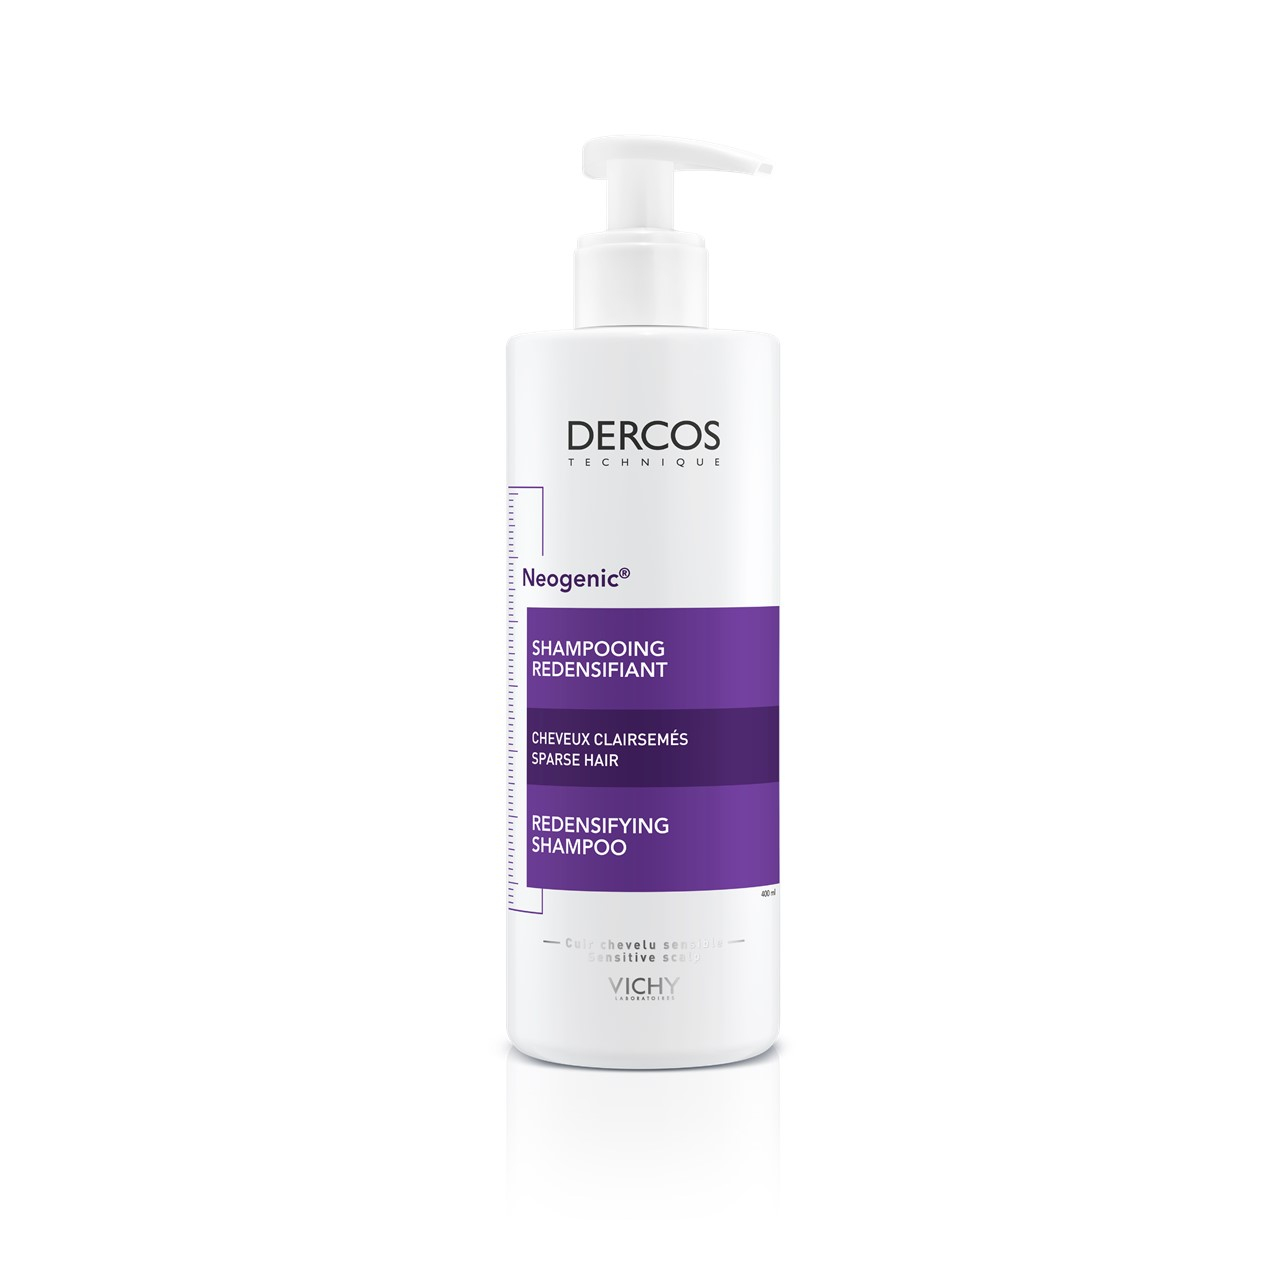 Vichy Dercos Neogenic Redensifying Shampoo 400ml (13.53fl oz)